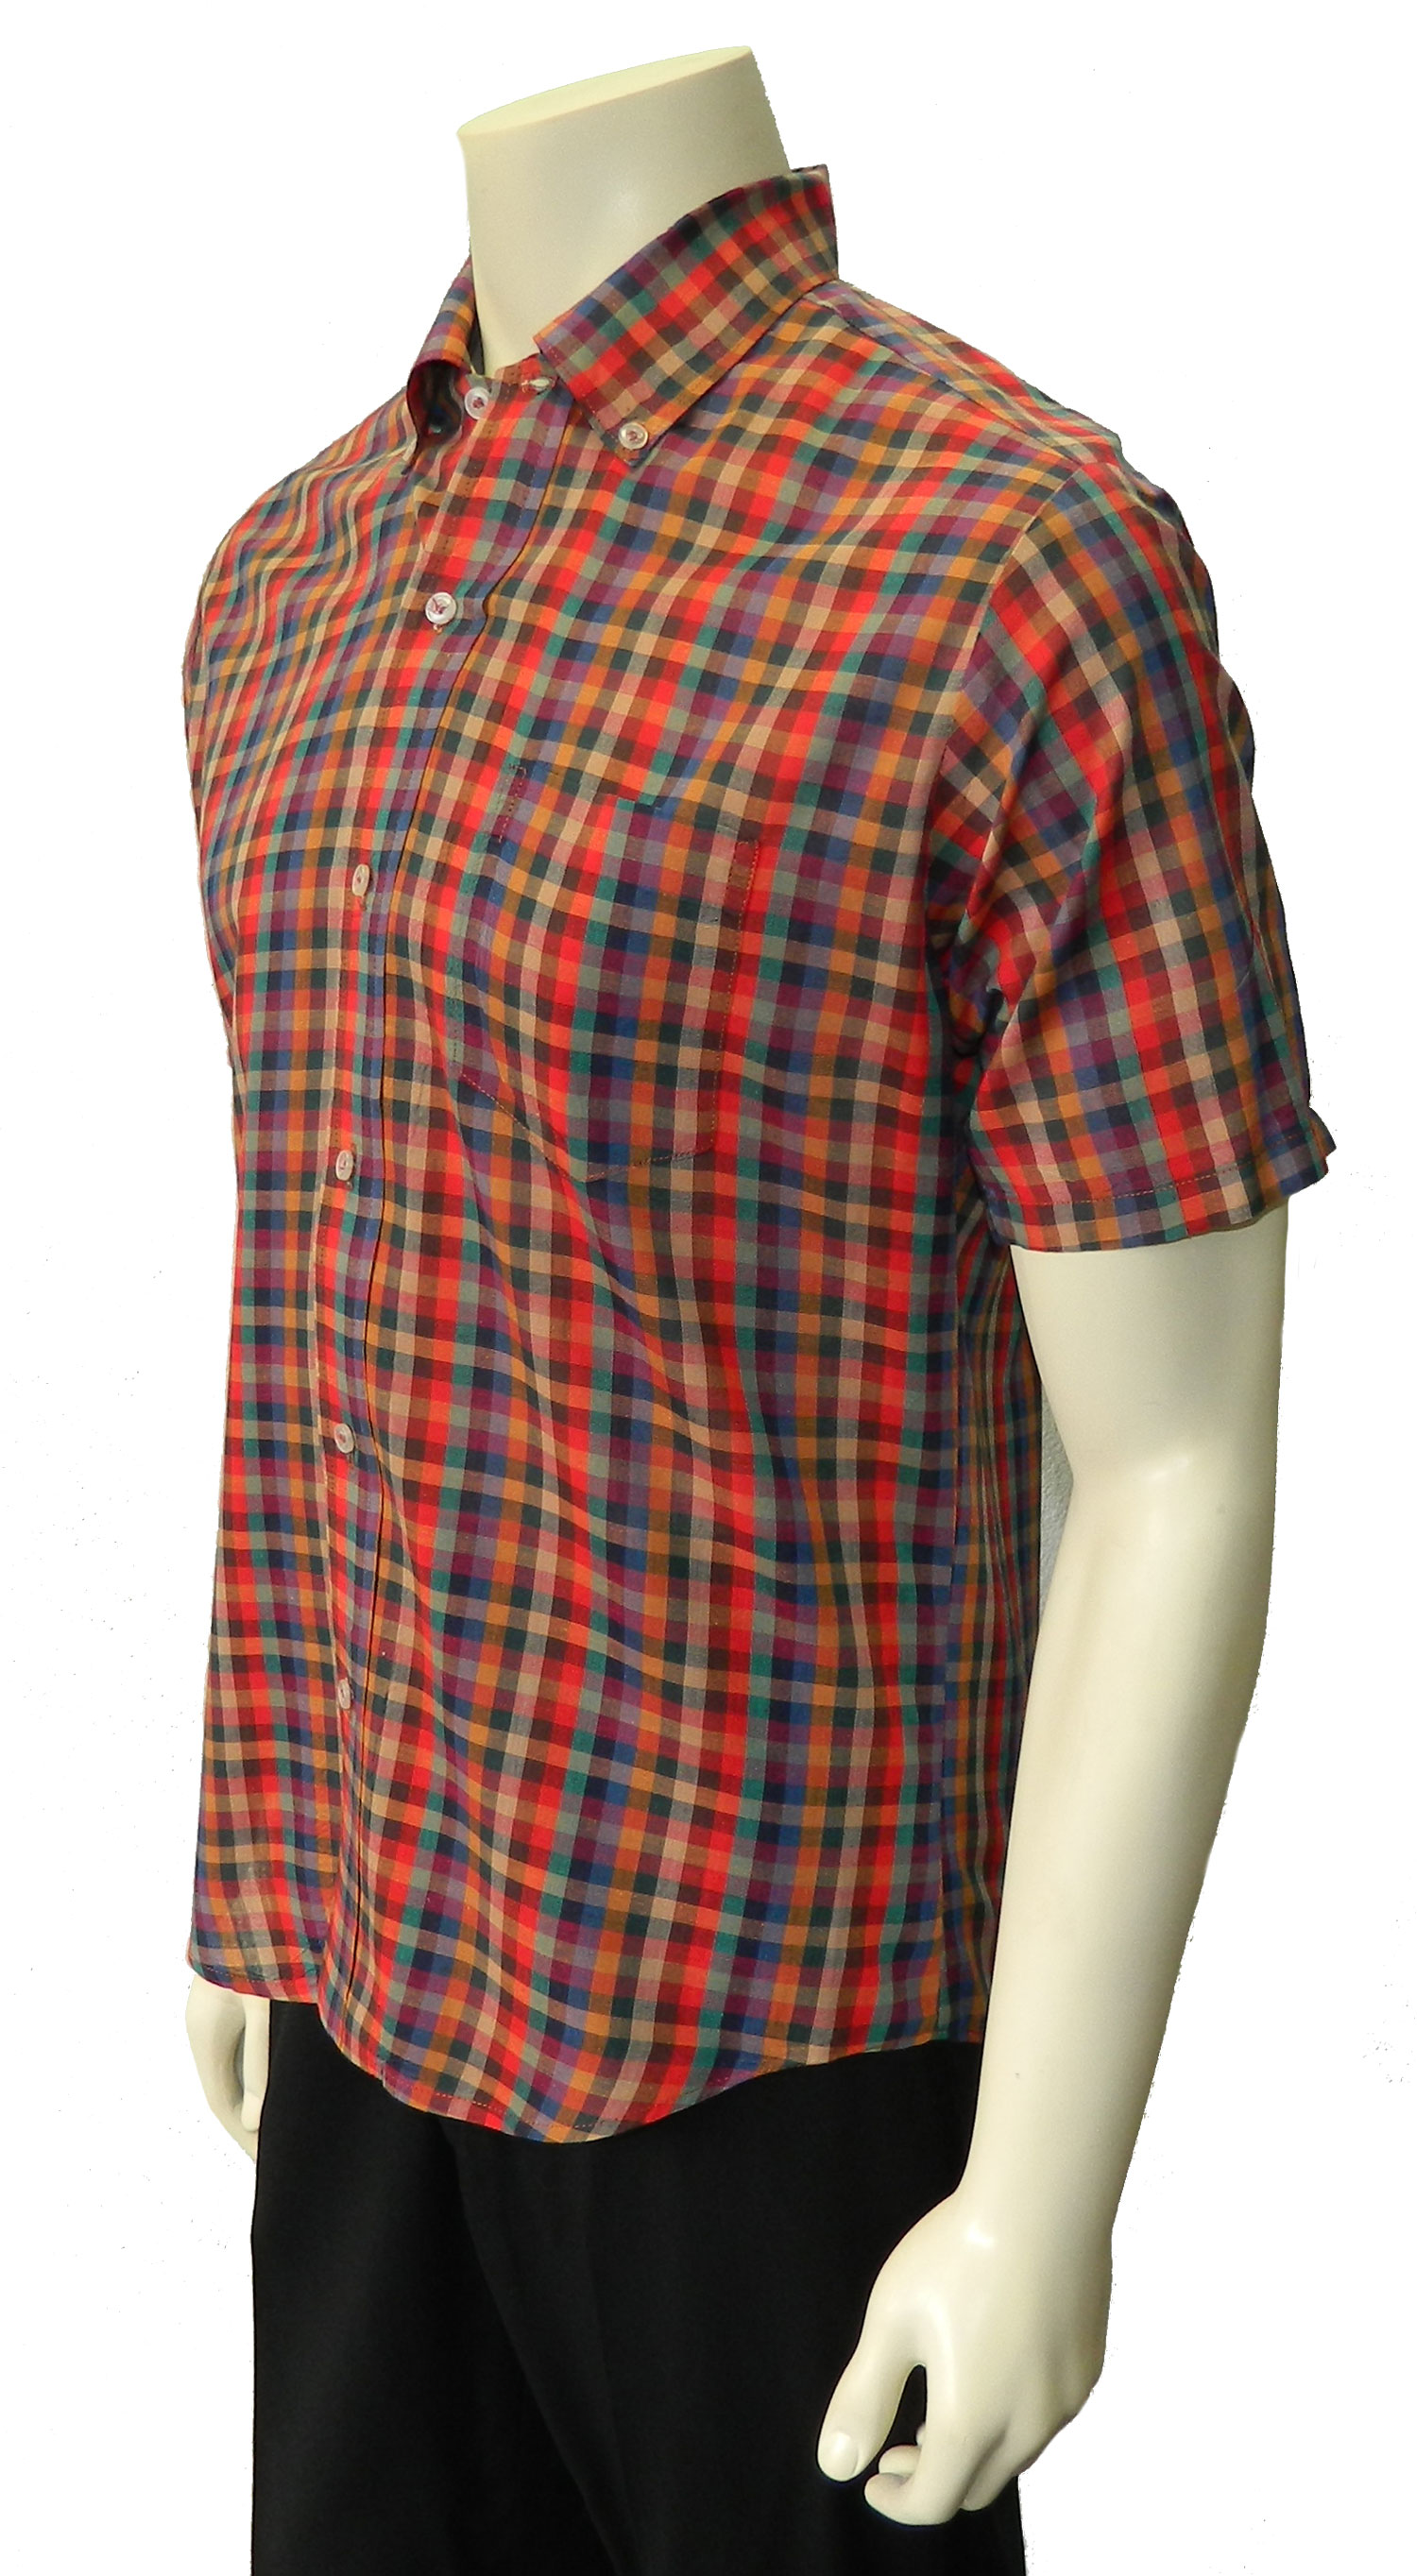 1960s tattersall plaid shirt